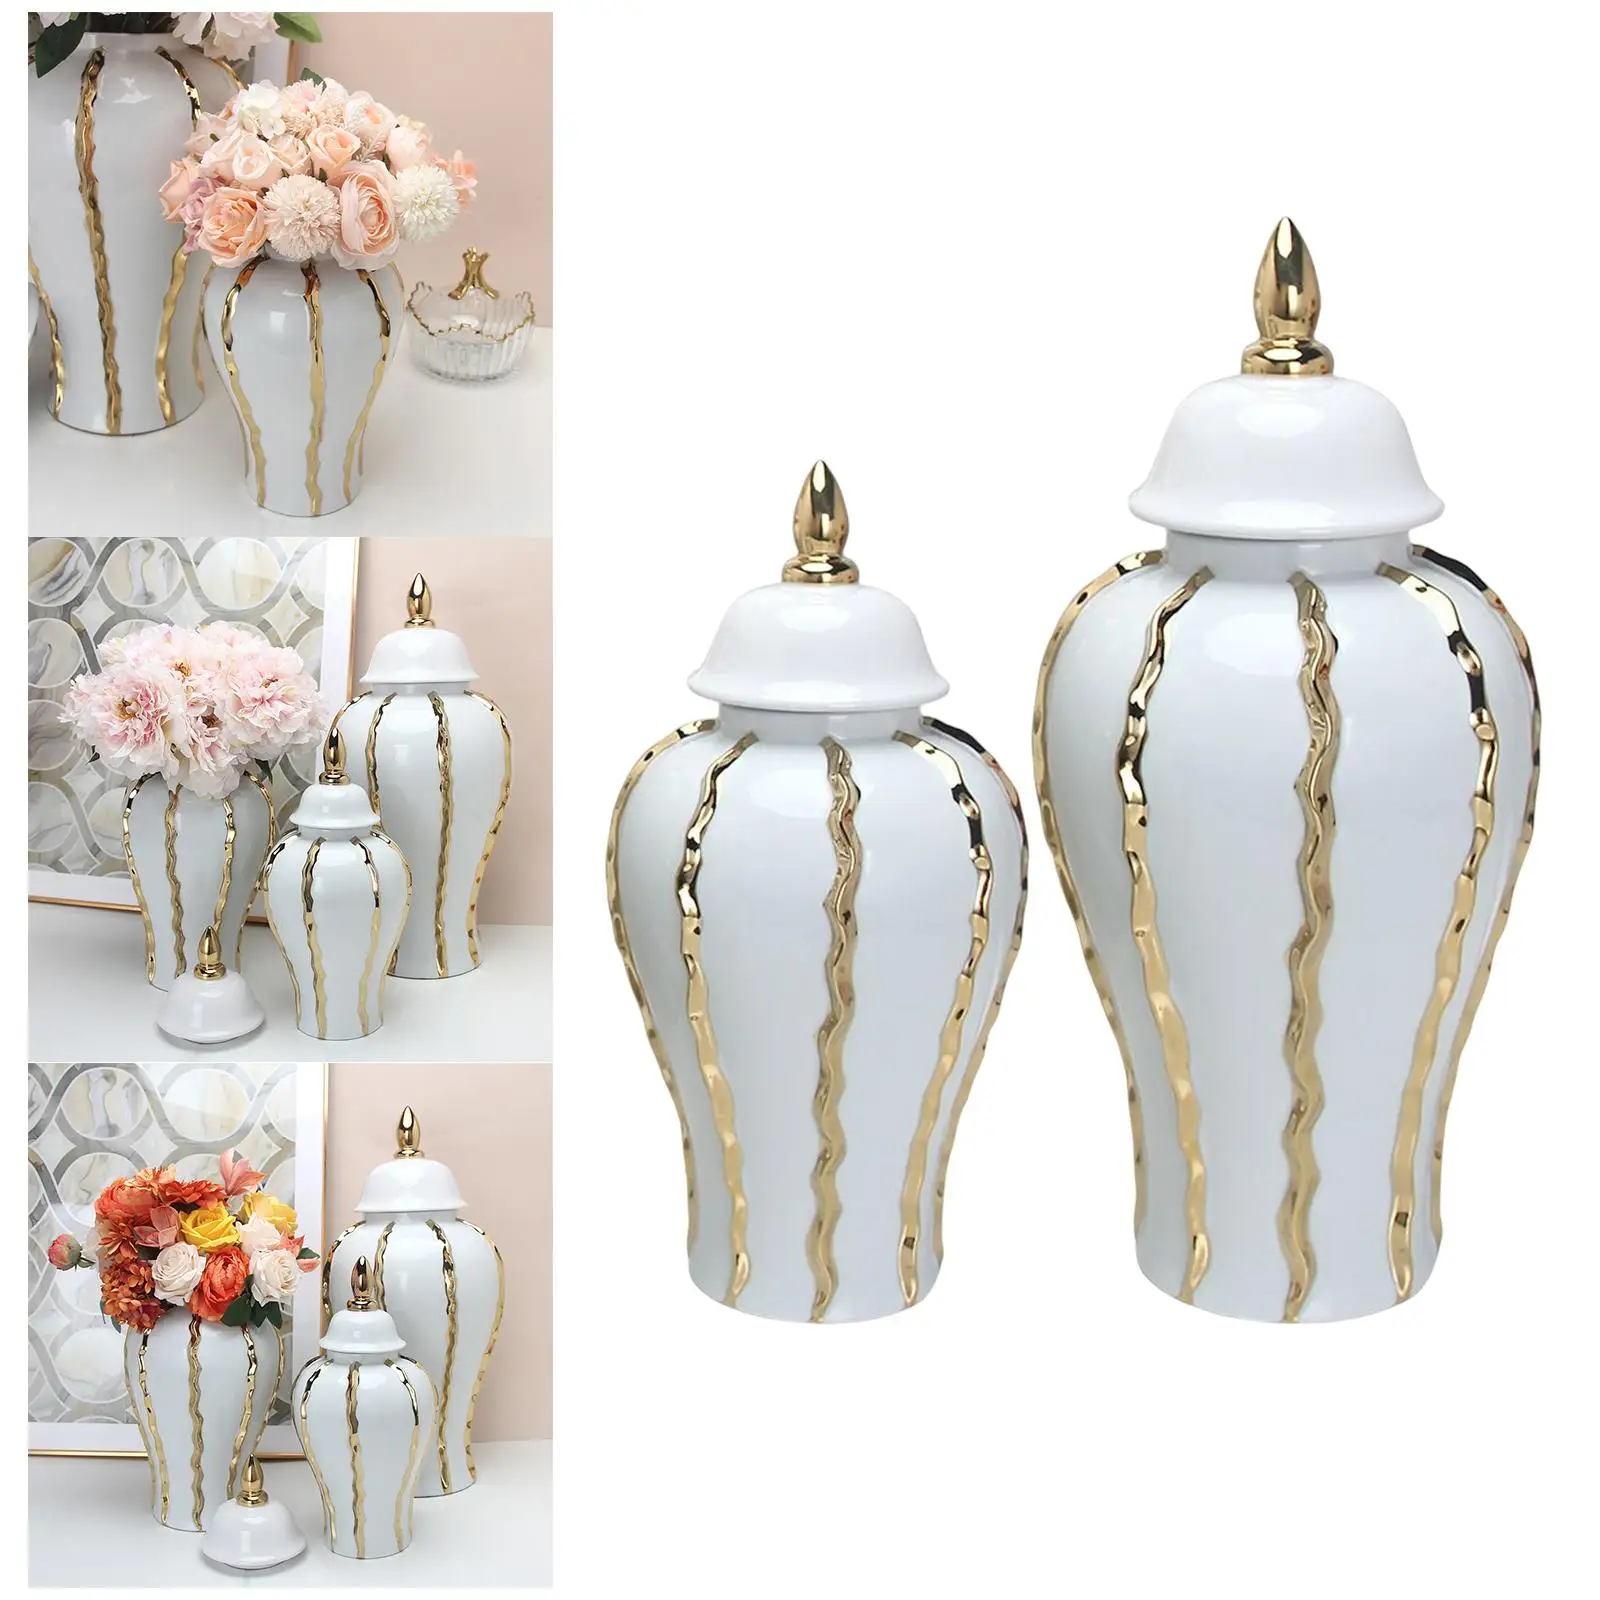 Classical Ginger Jar Flower Vase Handicraft Flower Plants Holder with Lid for Floral Arrangement Office Decoration Display Desk